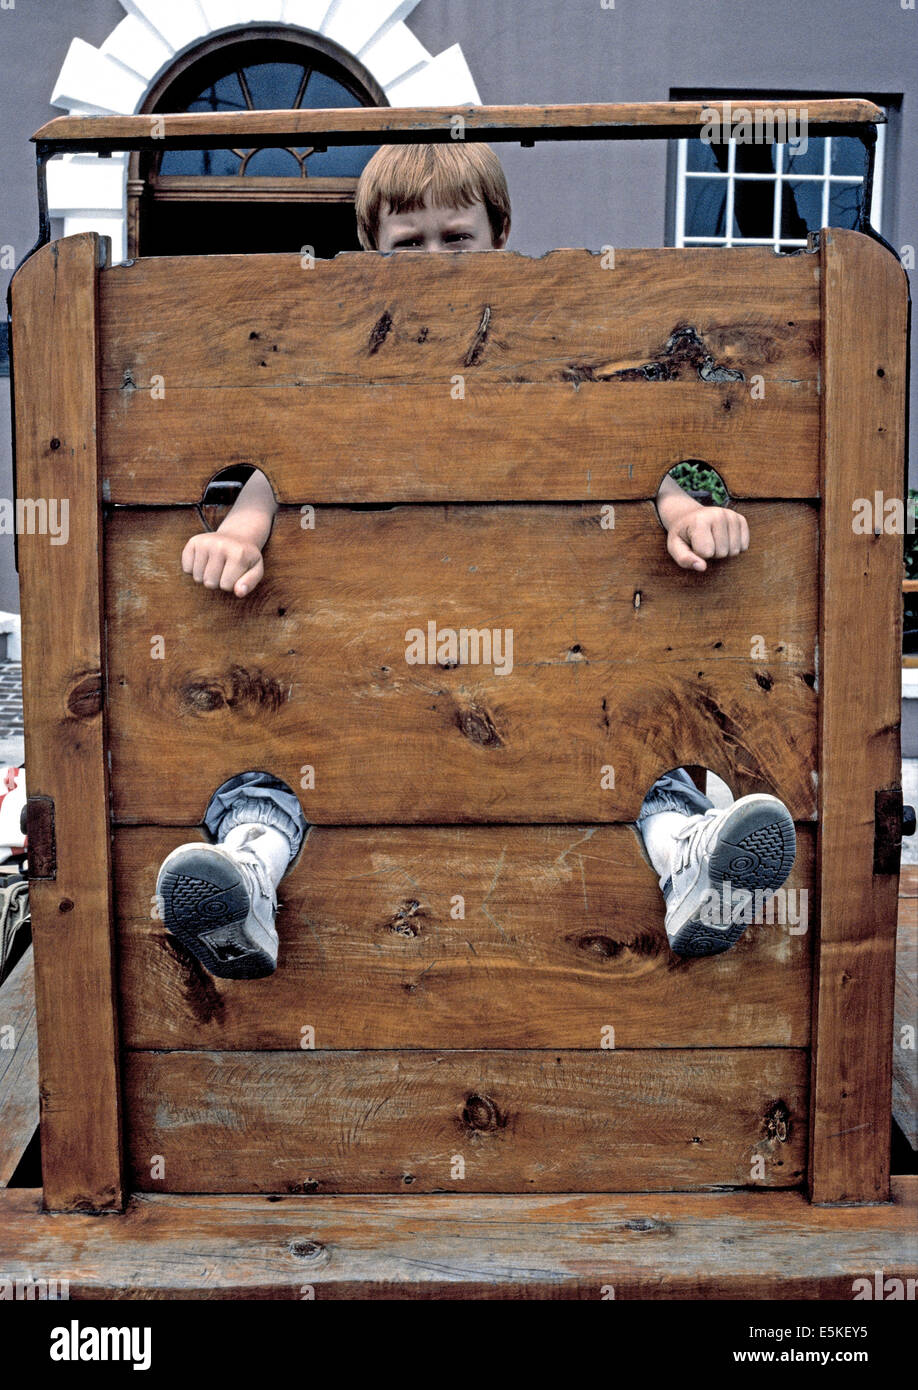 Un joven posa para una foto con sus manos y sus pies que sobresalen de una picota, un castigo público común por delitos leves a principios de Bermudas. Foto de stock